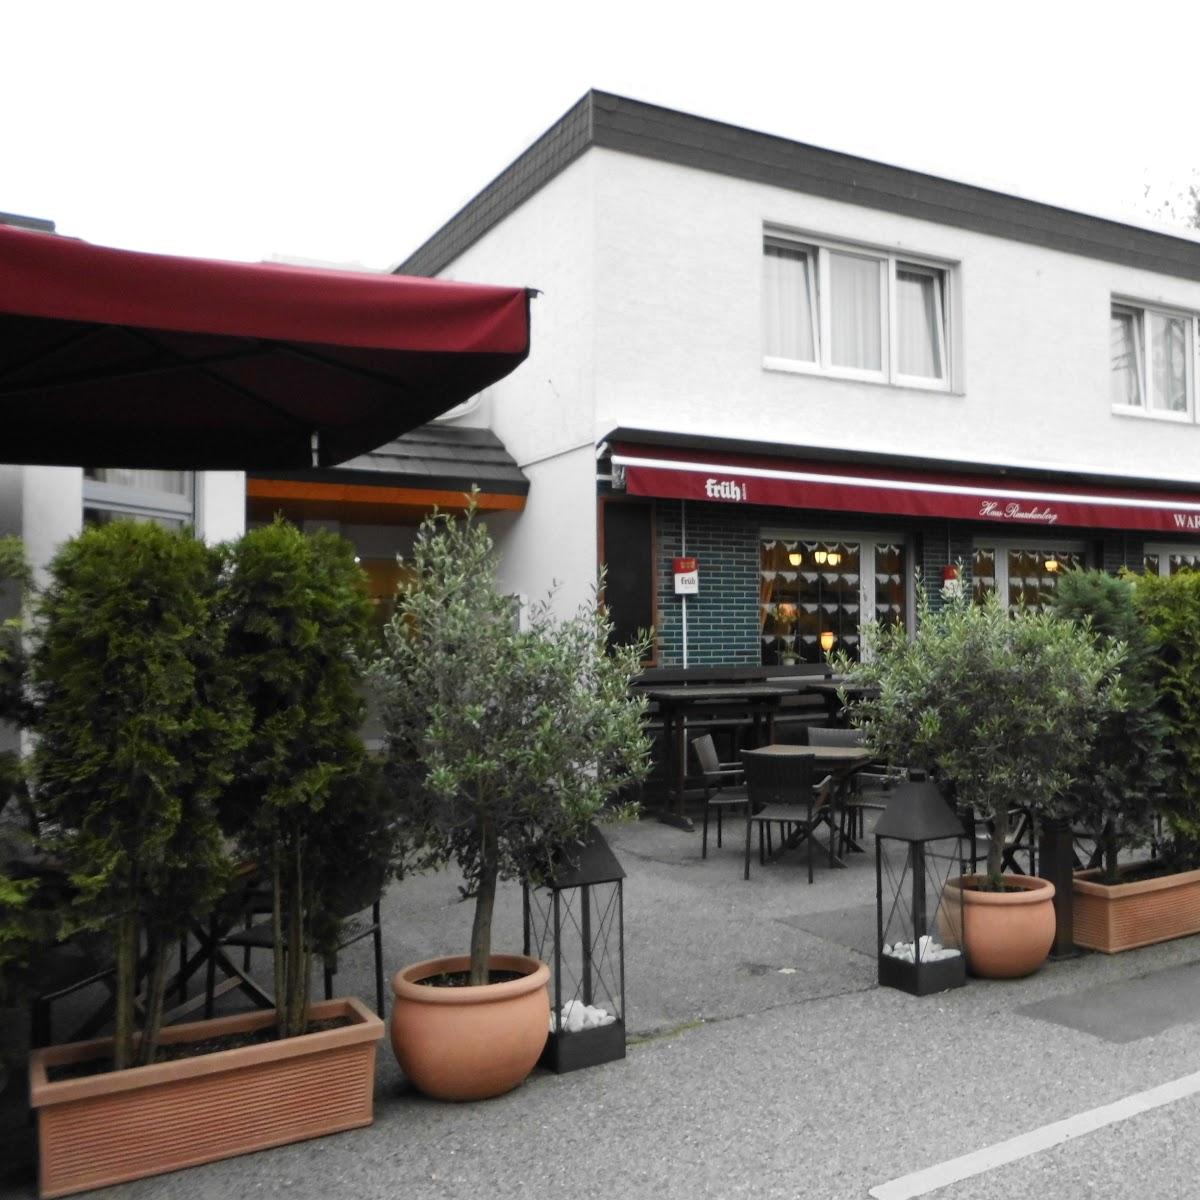 Restaurant "Haus Reuschenberg" in Leverkusen